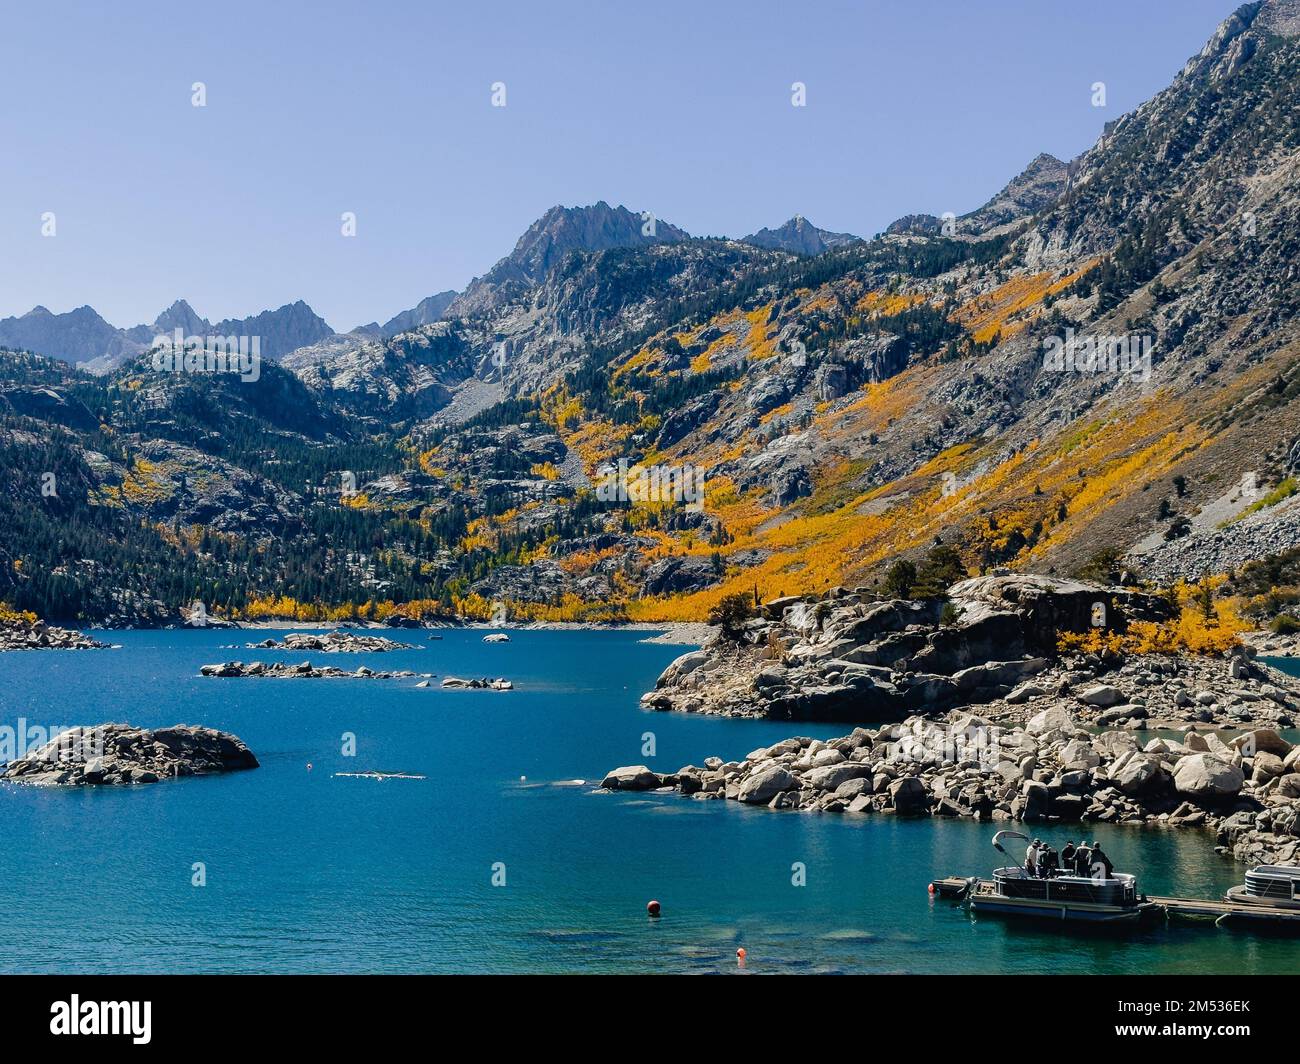 Le beau paysage du lac Sabrina dans une région montagneuse Banque D'Images